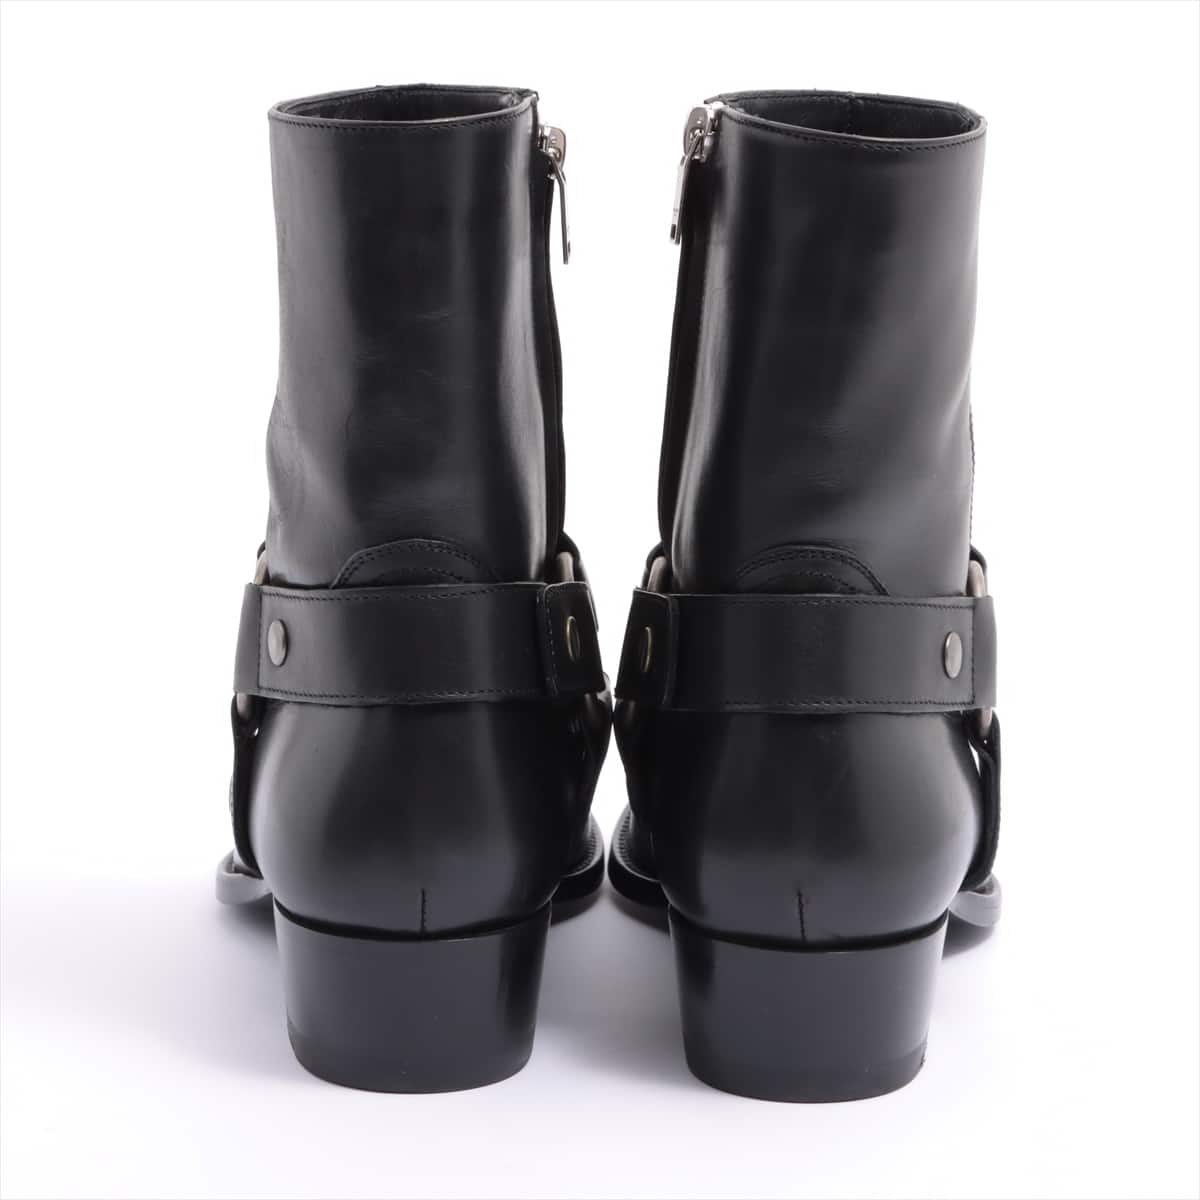 Saint Laurent Paris Leather Boots 39 Men's Black rings Wyatt Harness 443190